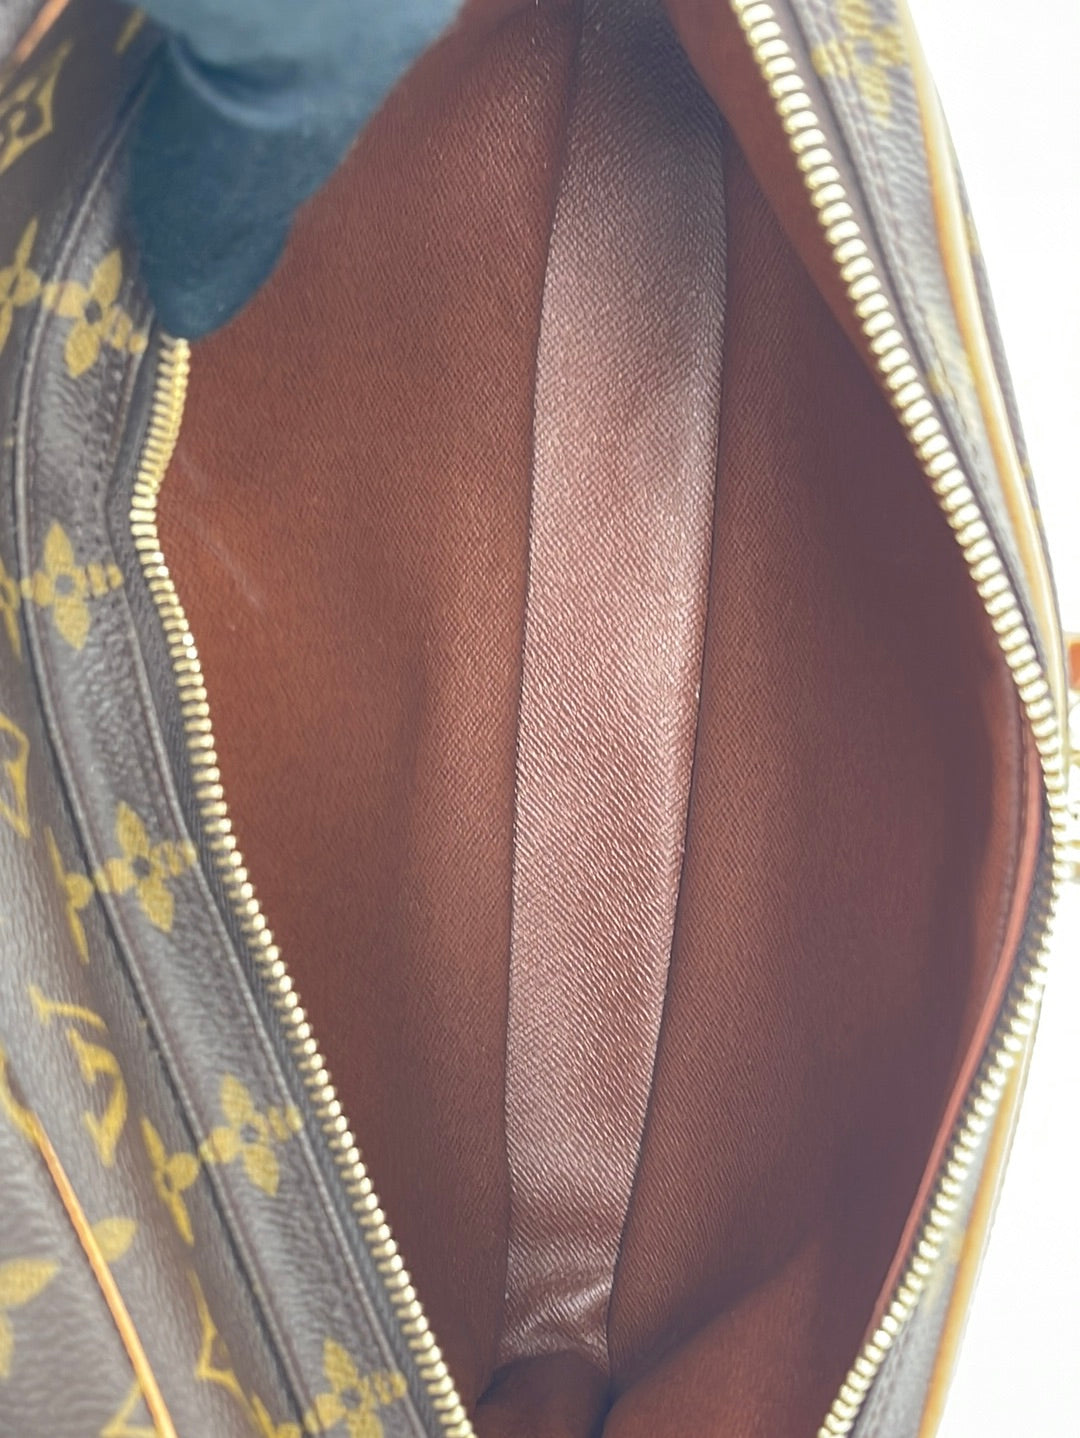 Louis Vuitton Vintage Authentic Monogram Shoulder Bag Nile mm 2012